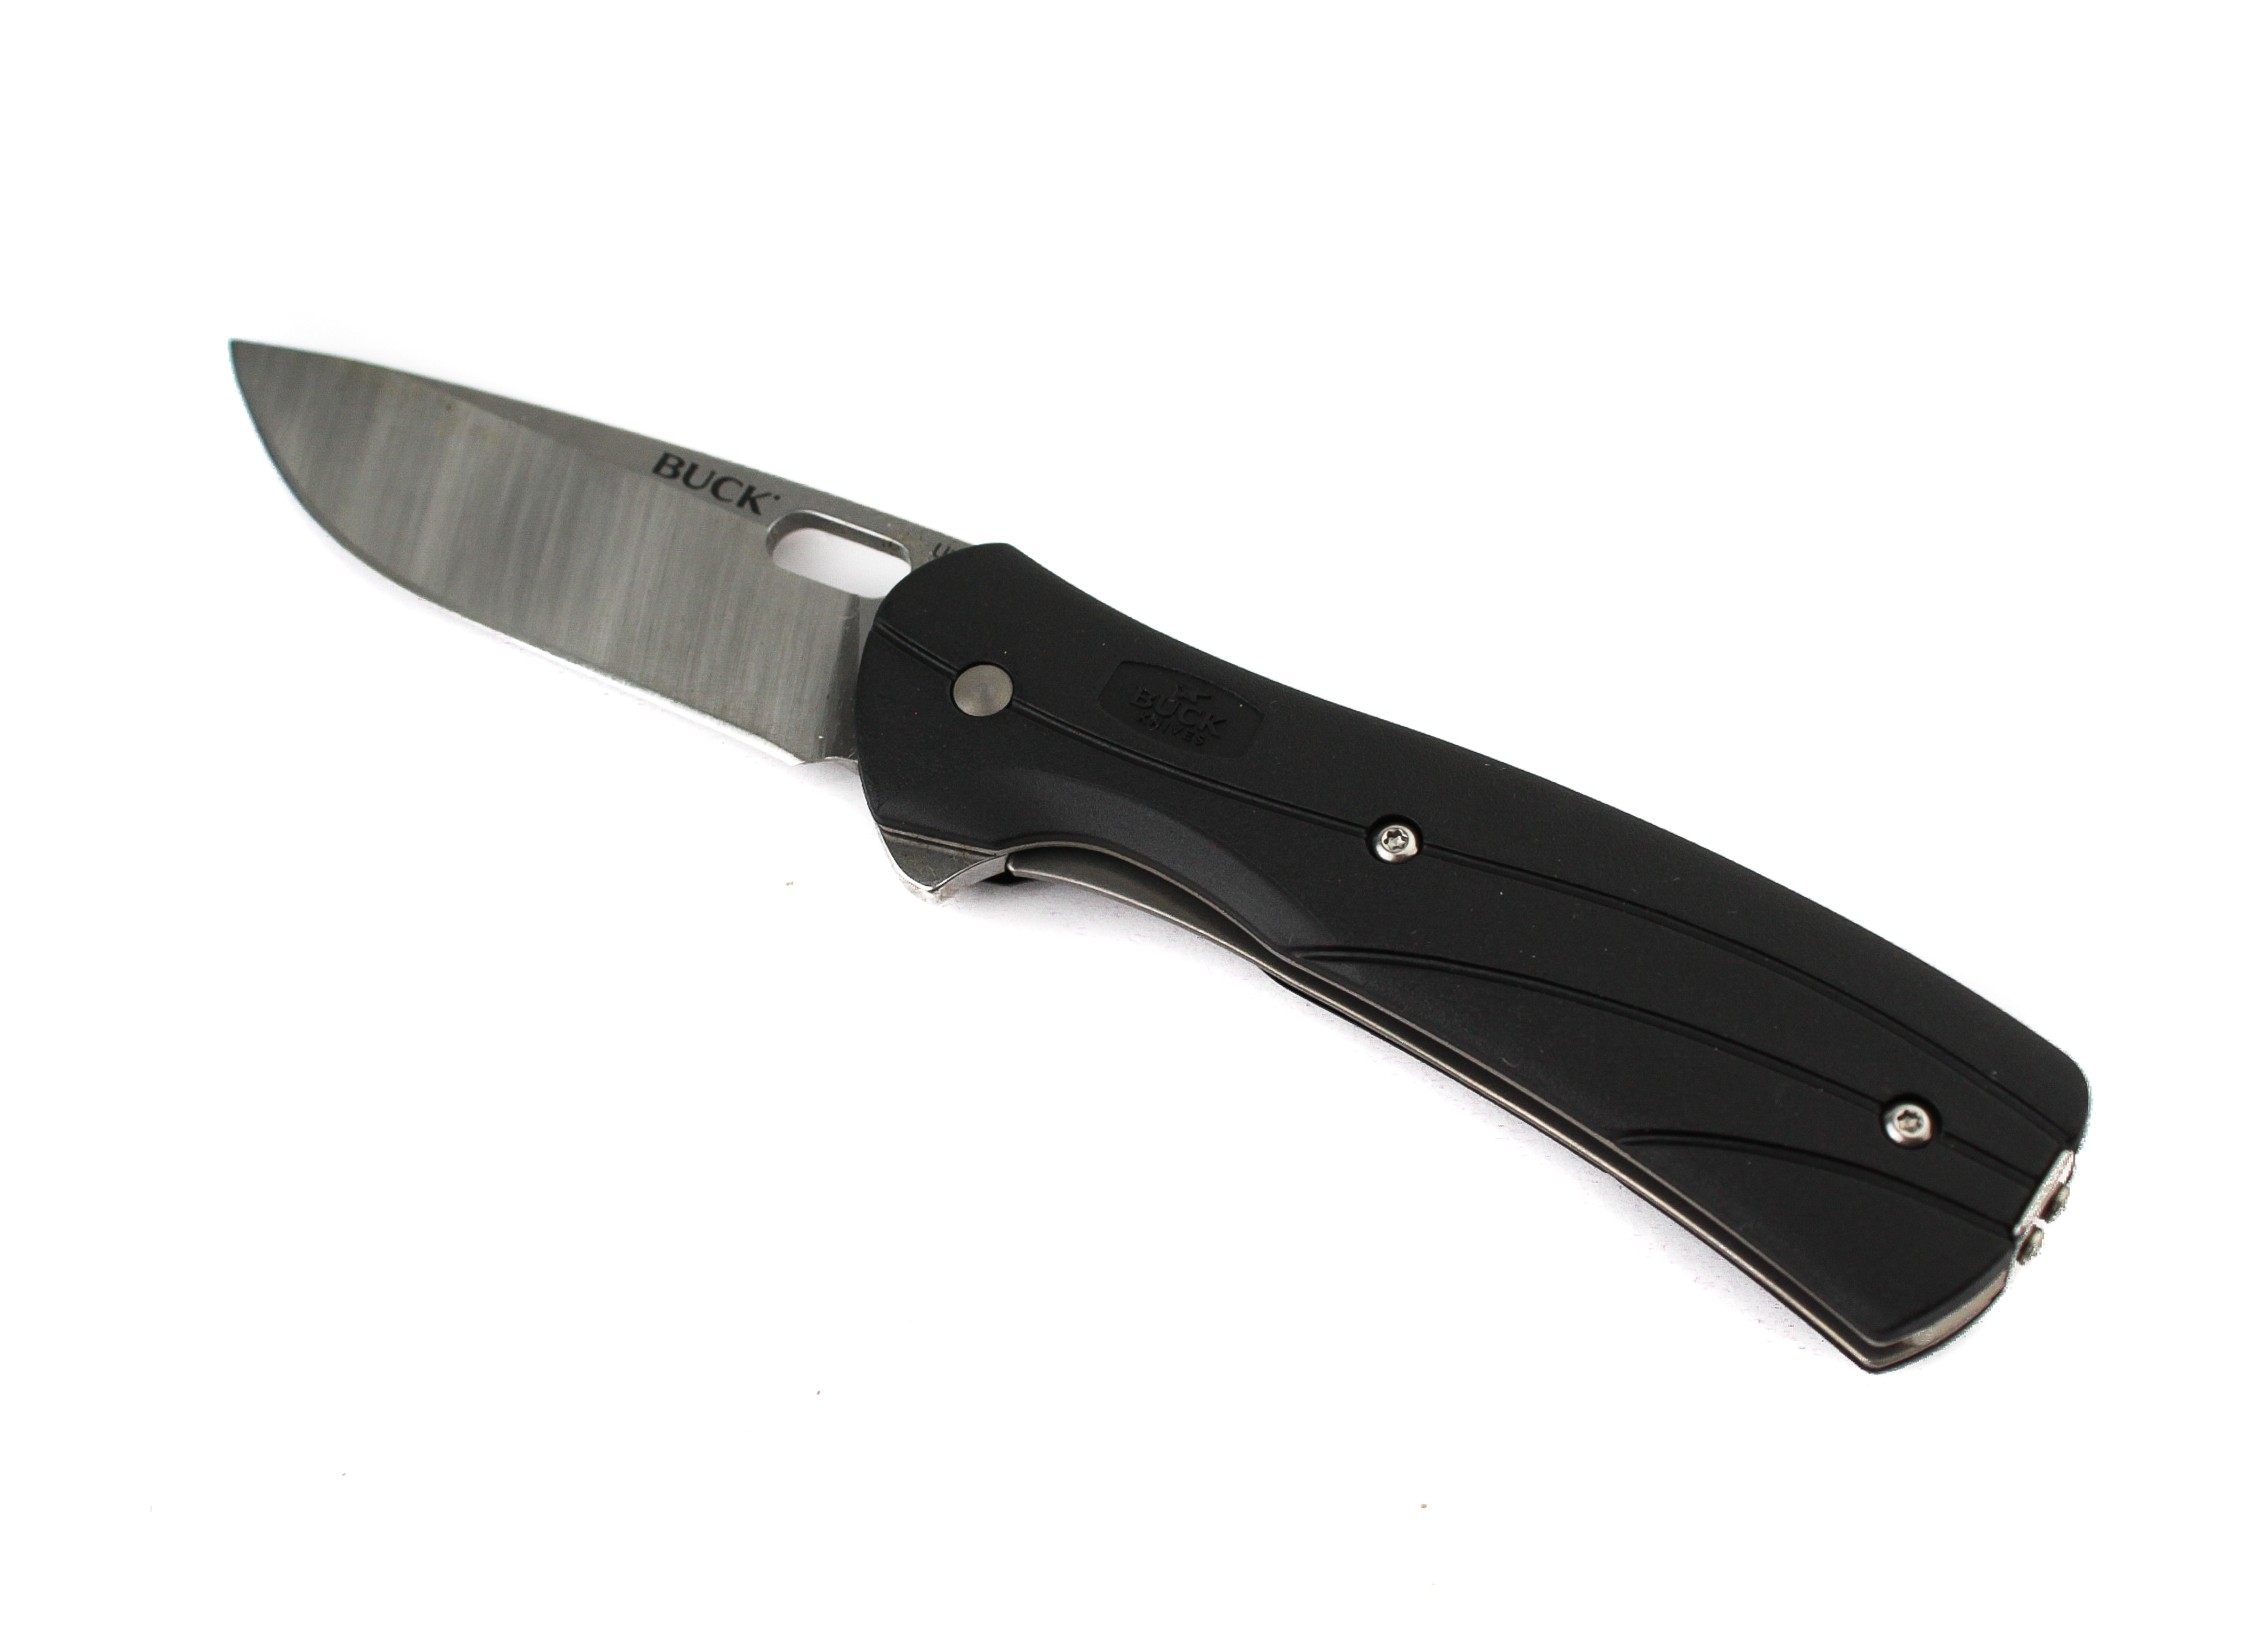 Нож Buck Vantage Select складной клинок 8 см сталь 420HC  - фото 1